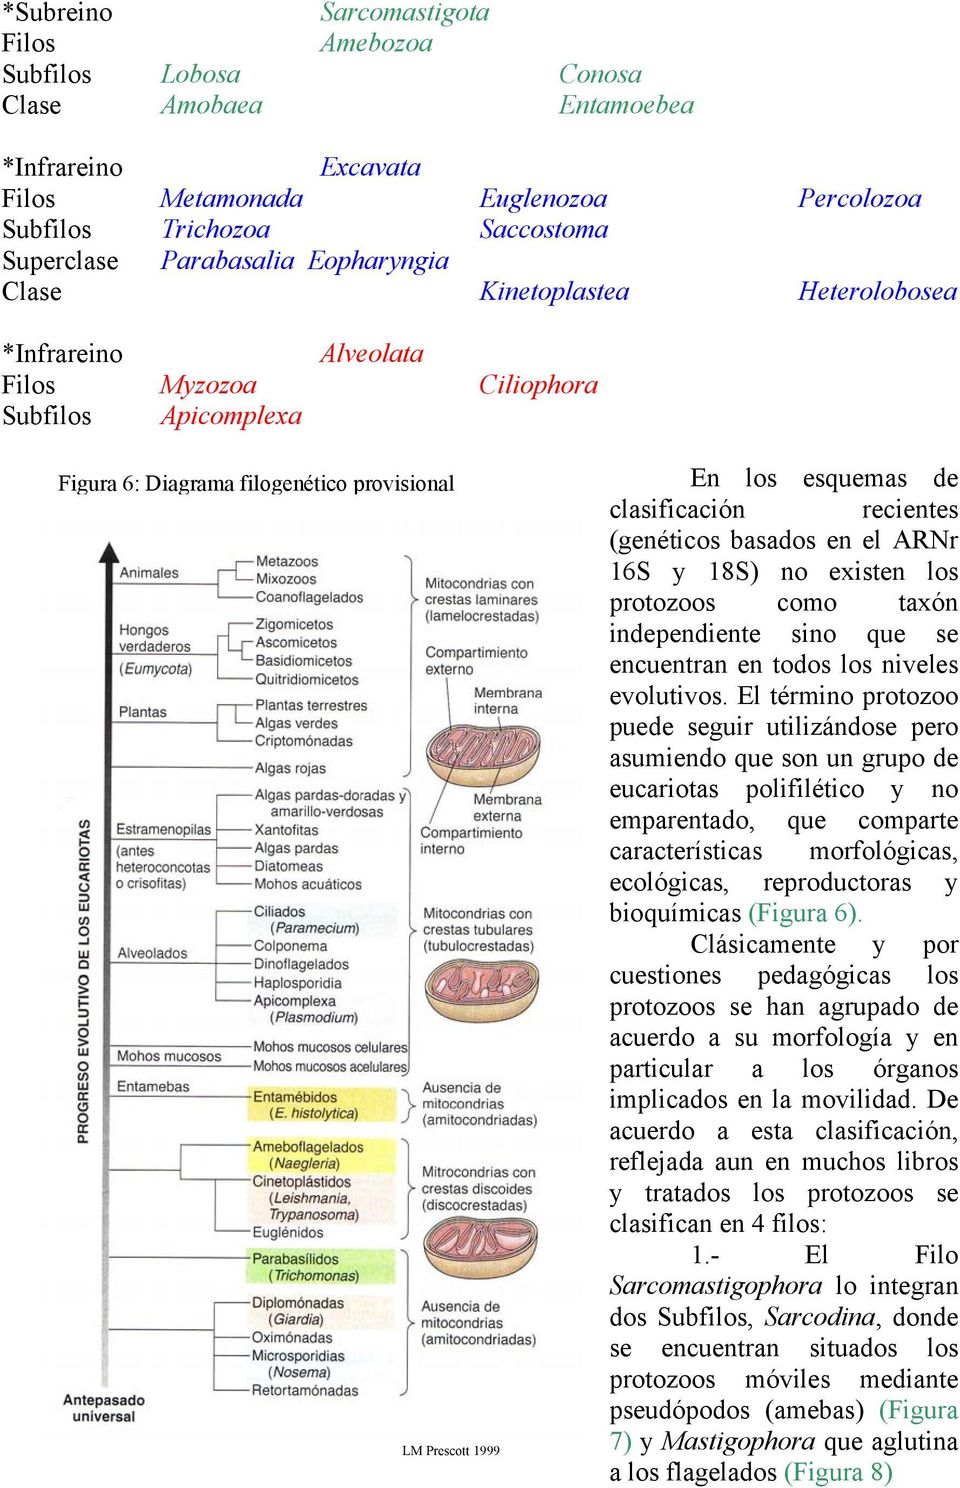 esquemas de clasificación recientes (genéticos basados en el ARNr 16S y 18S) no existen los protozoos como taxón independiente sino que se encuentran en todos los niveles evolutivos.